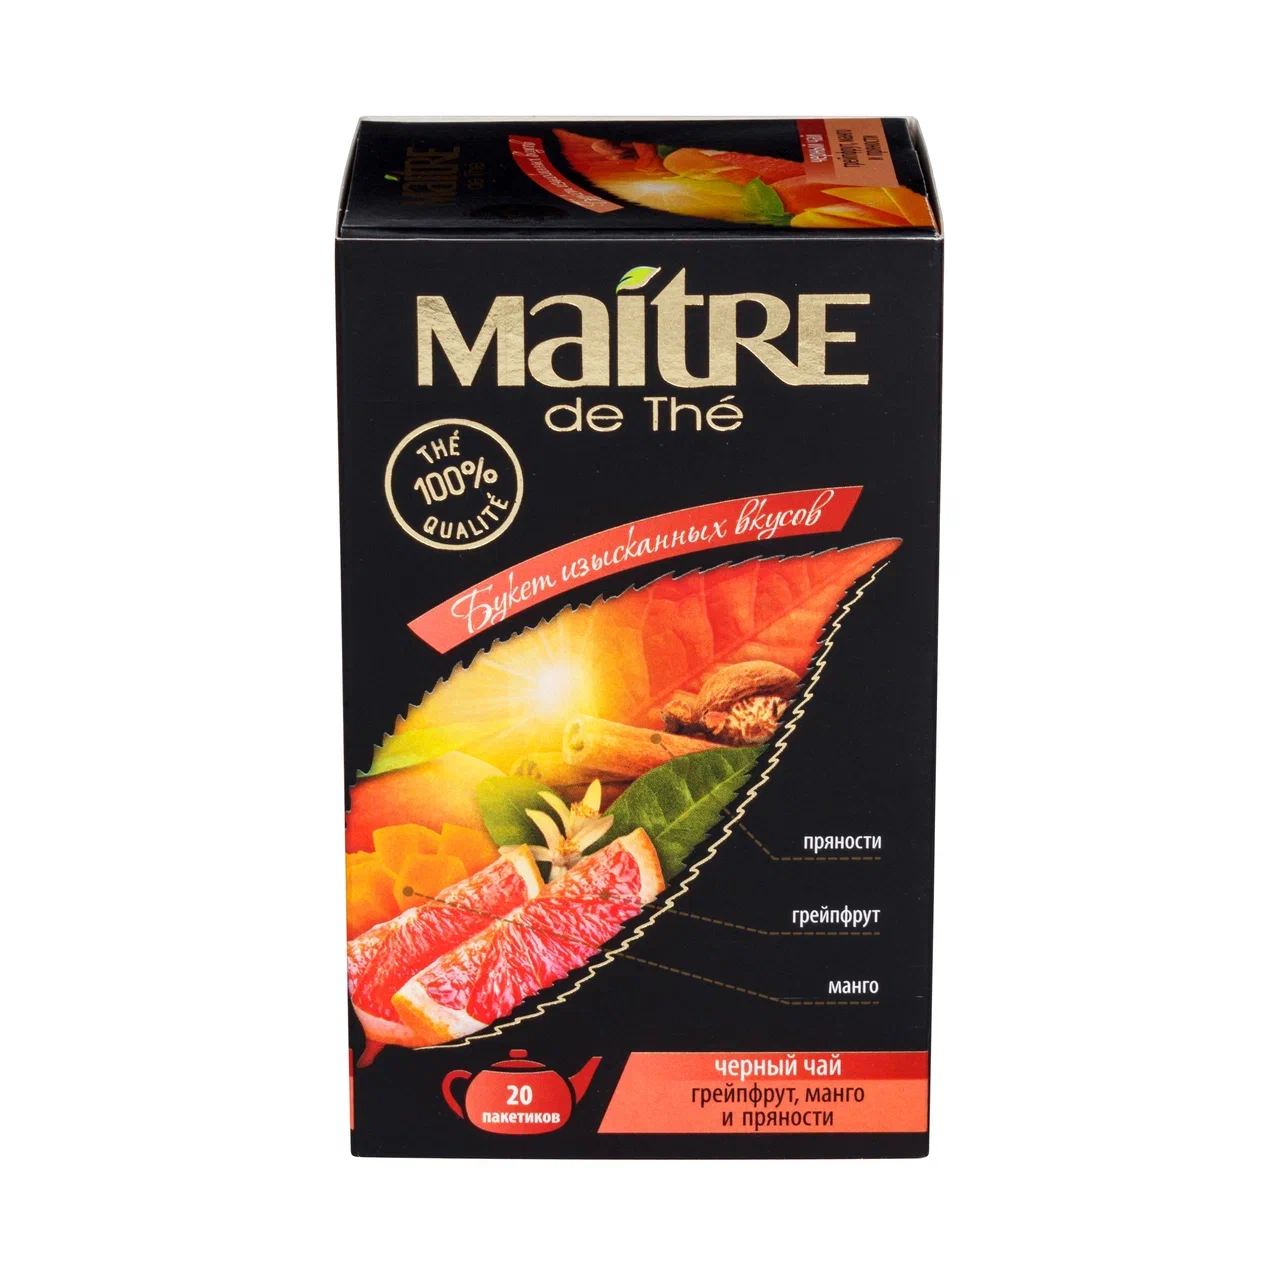 Чай черный Maitre de The de The Грейпфрут, Манго и Пряности, 20 пакетиков х 1,75 г